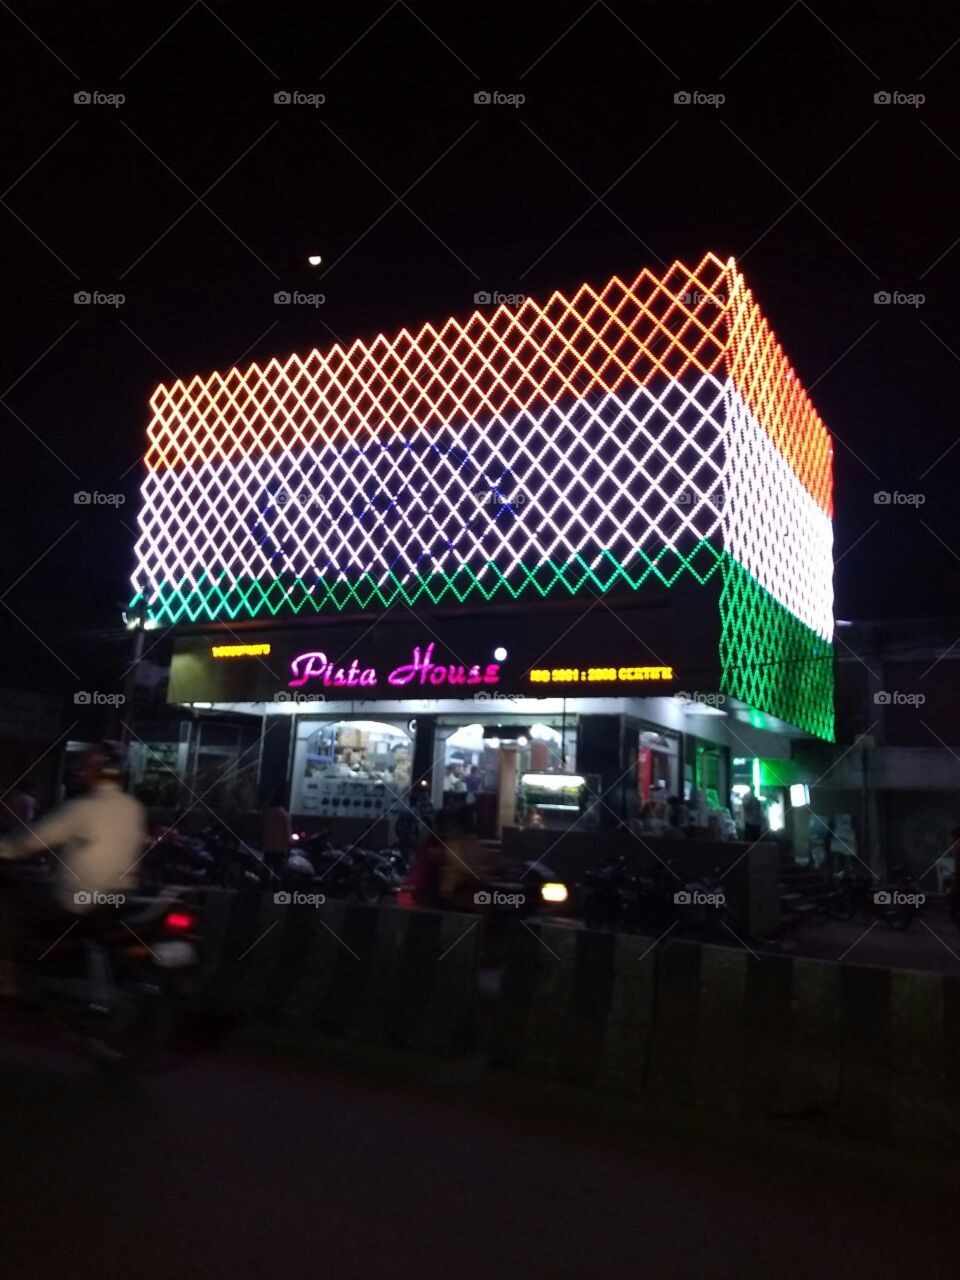 India's pista house